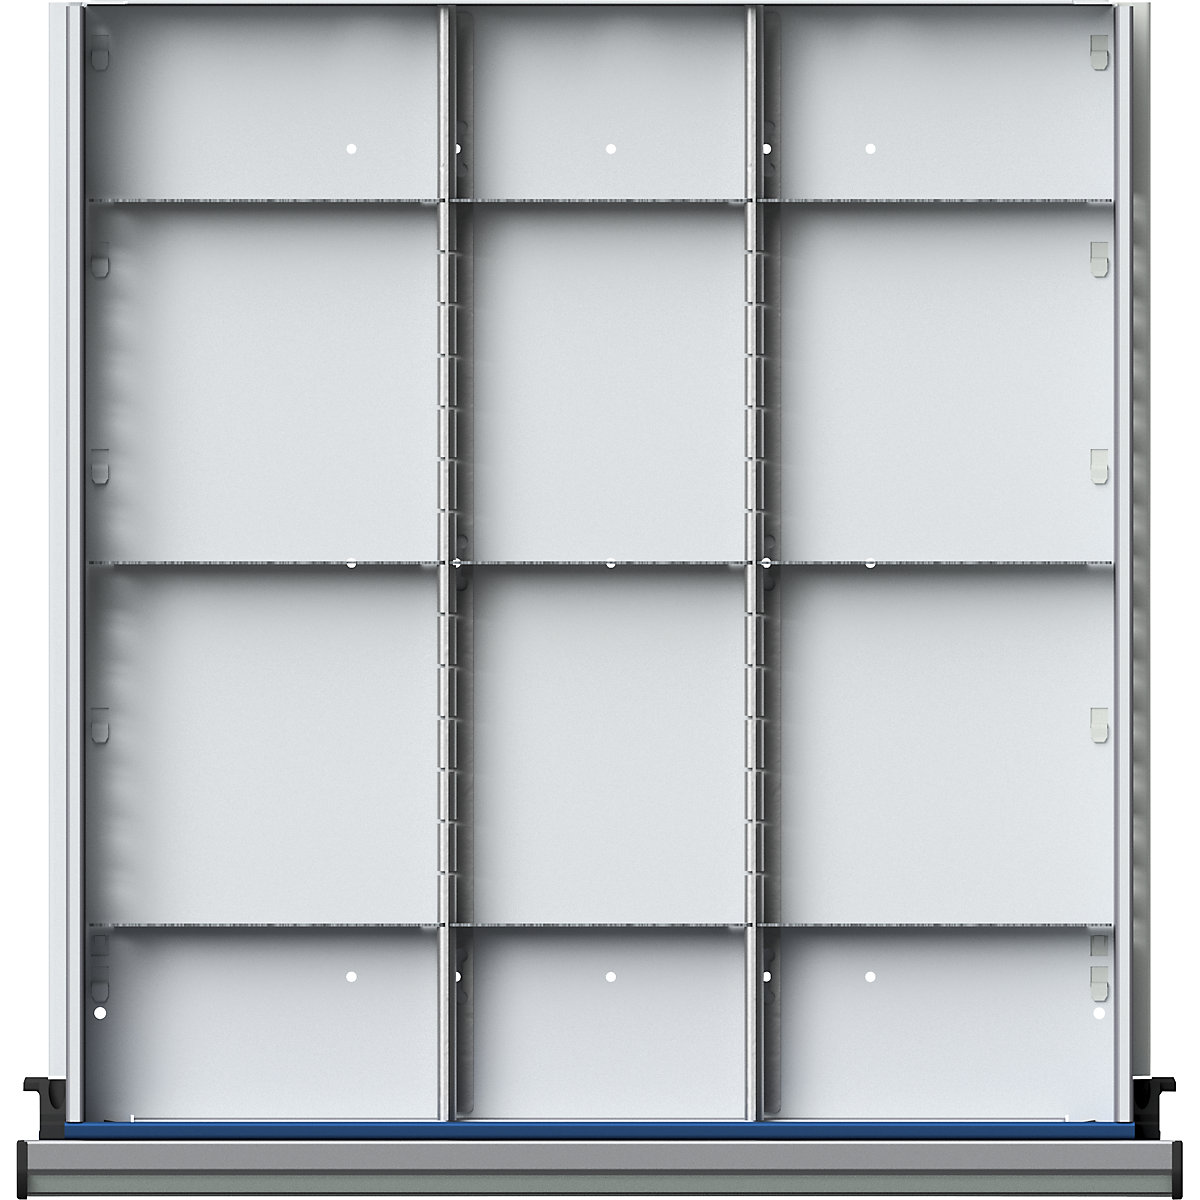 Souprava pro rozčlenění zásuvek – ANKE, 2 podélné a 9 příčných přepážek, výška zásuvky 180 mm-2